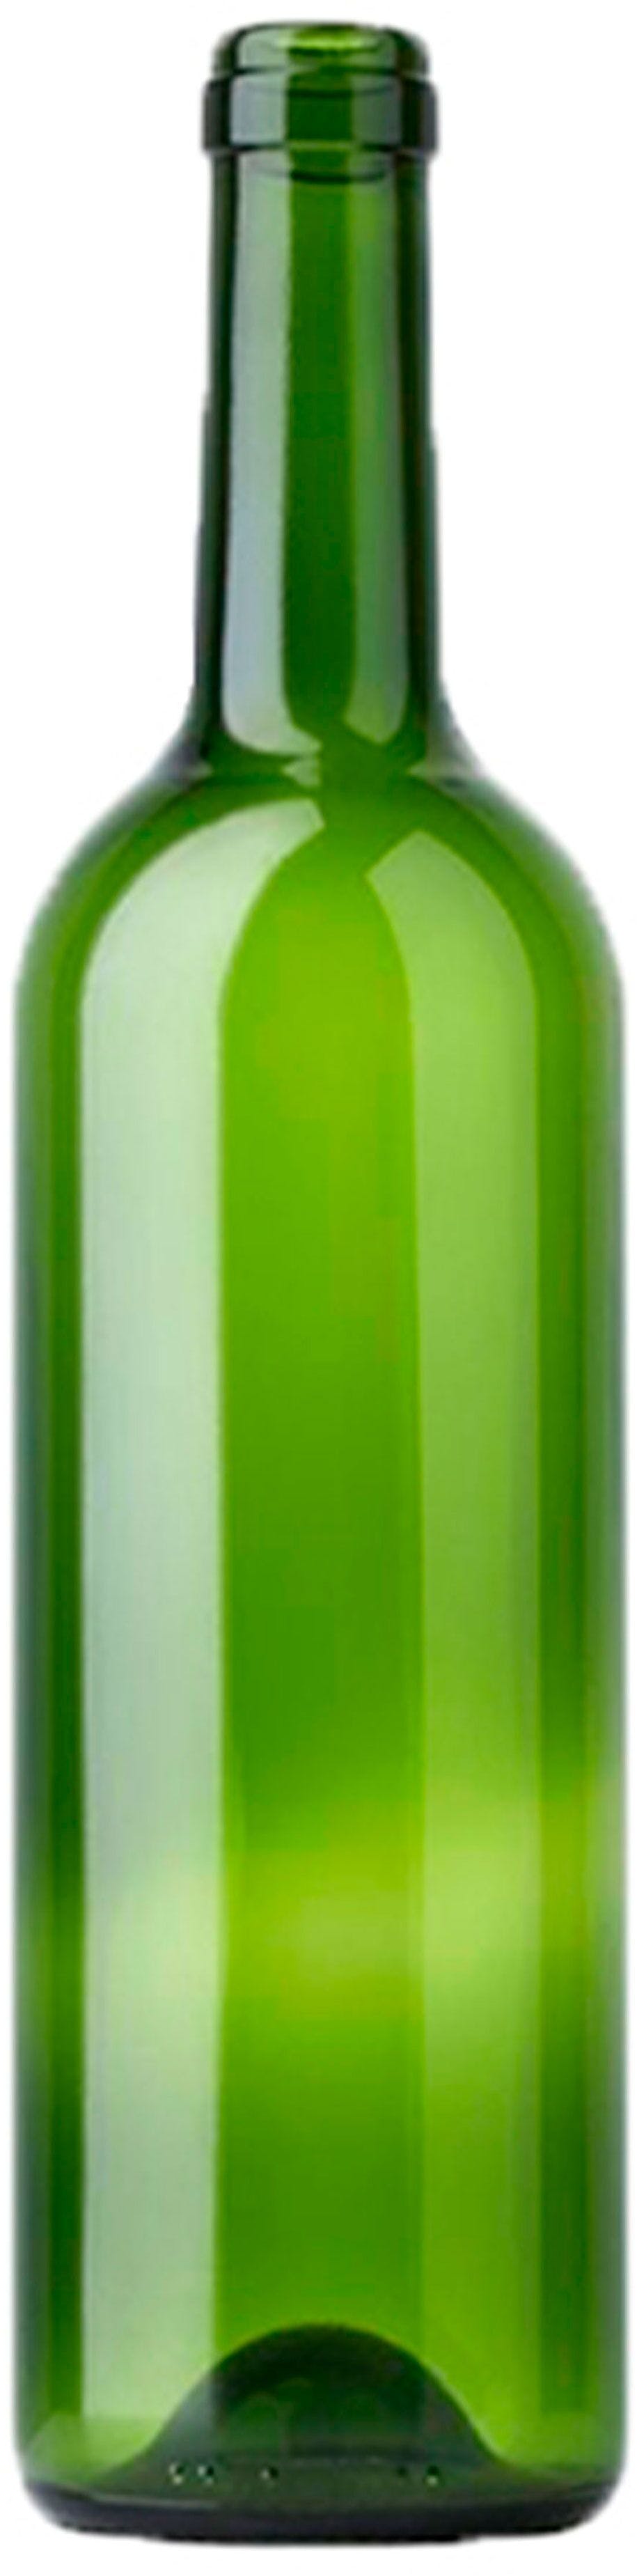 Bottle BORDOLESE  VIP 750 ml BG-Cork